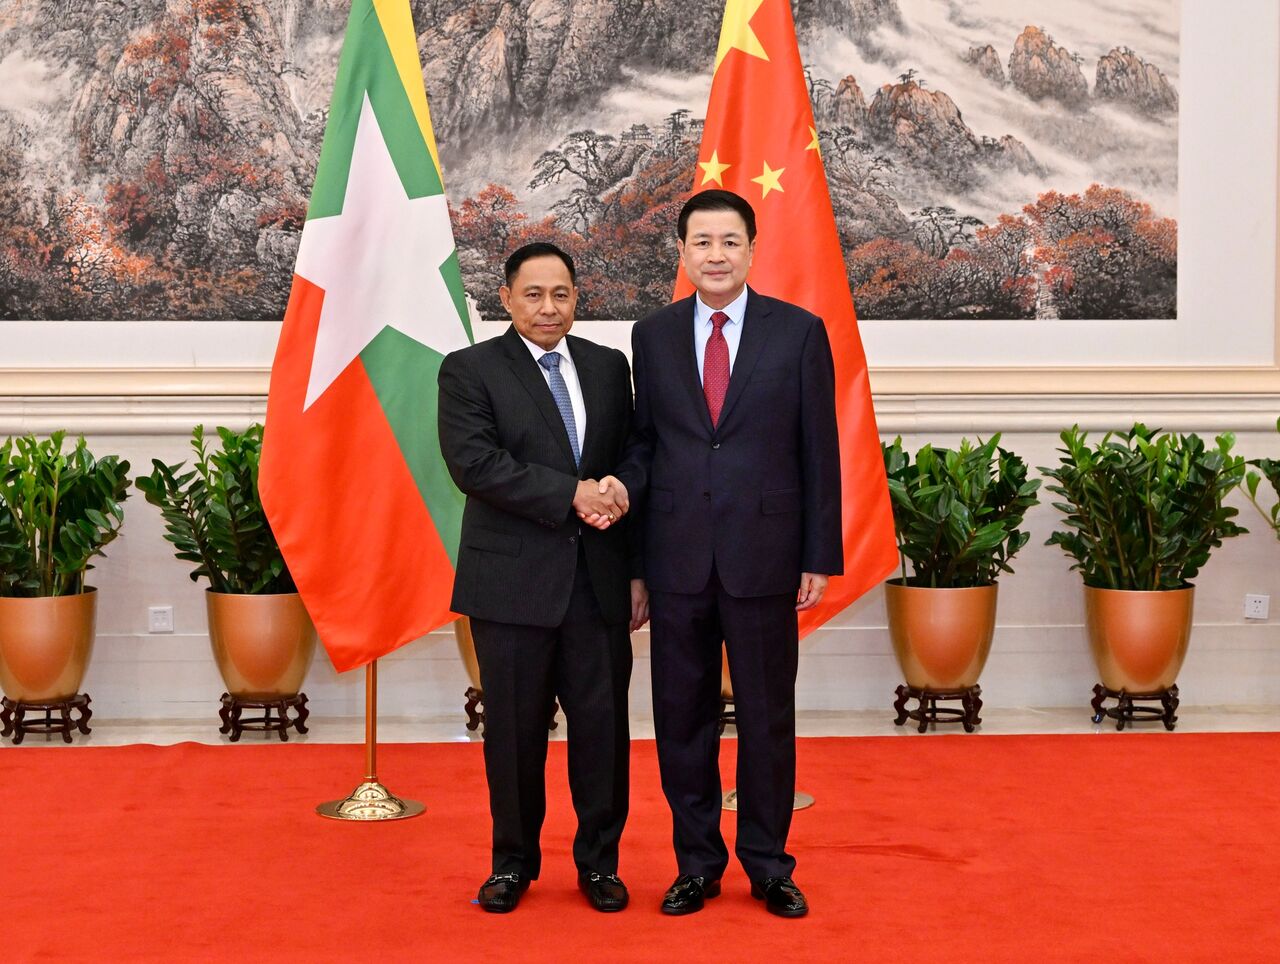 همکاری چین و حکومت نظانی میانمار برای تامین امنیت مرزی دو کشور